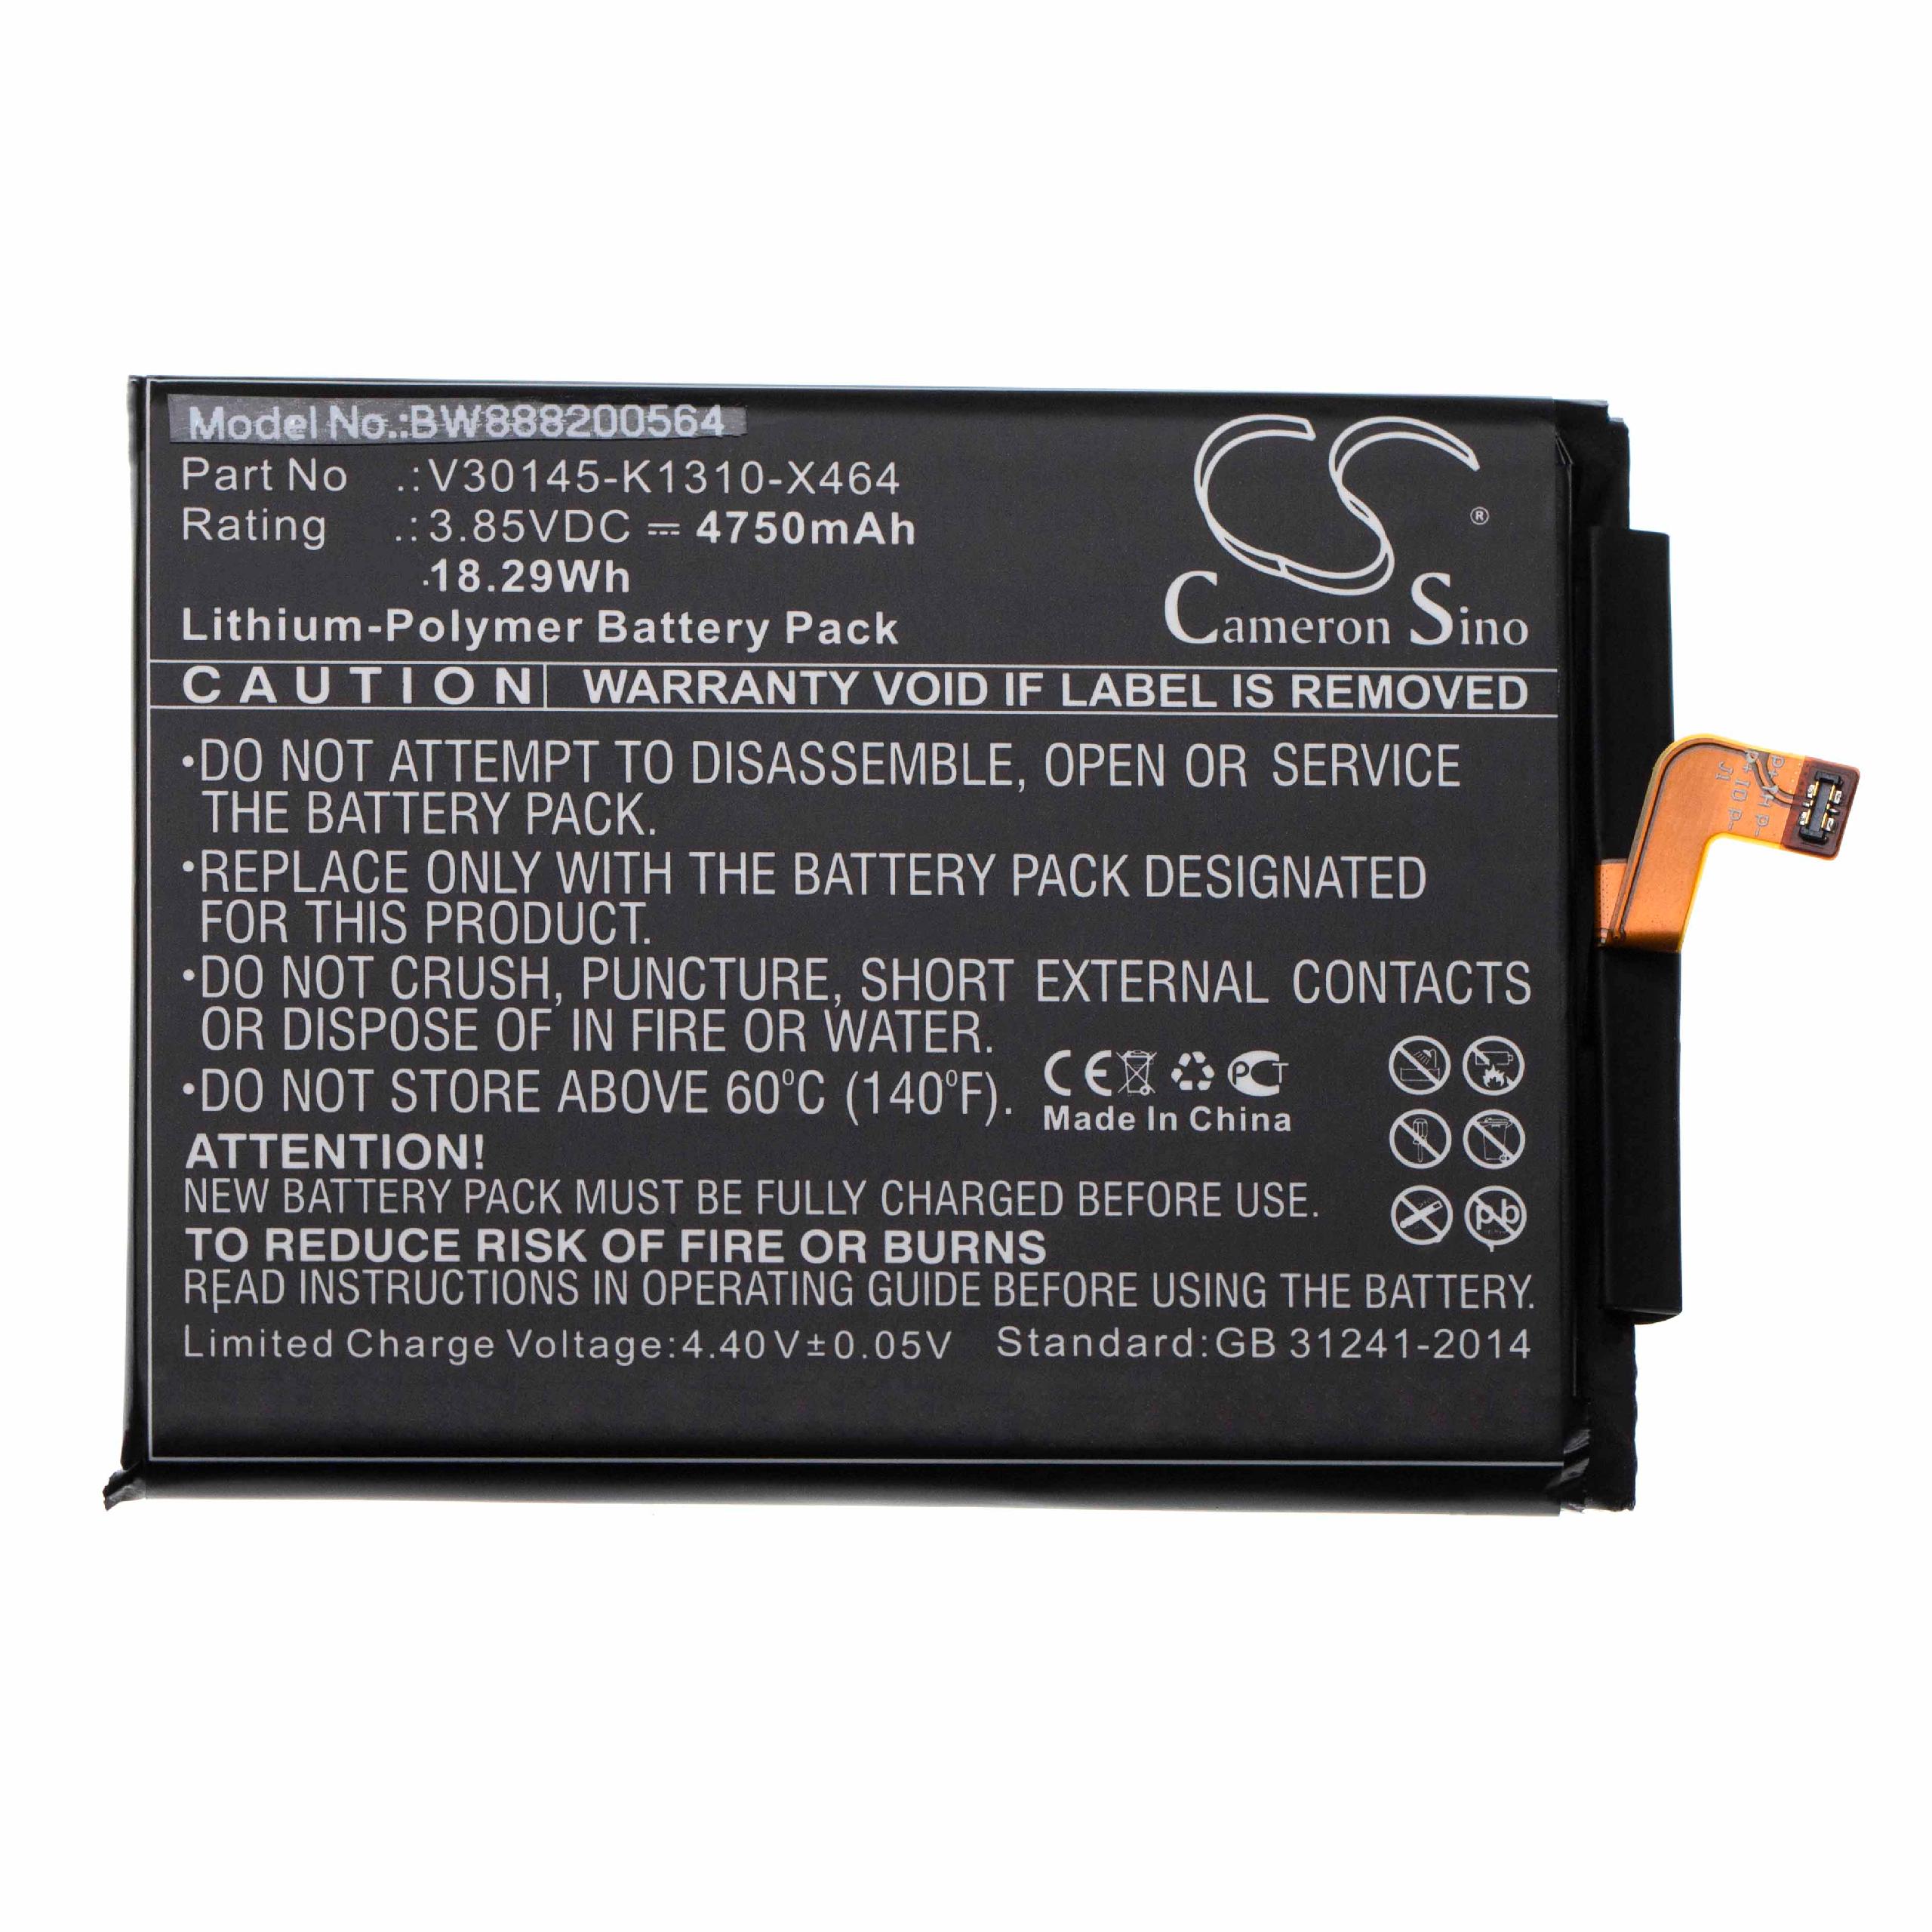 Batterie remplace Gigaset V30145-K1310-X464 pour téléphone portable - 4750mAh, 3,85V, Li-polymère